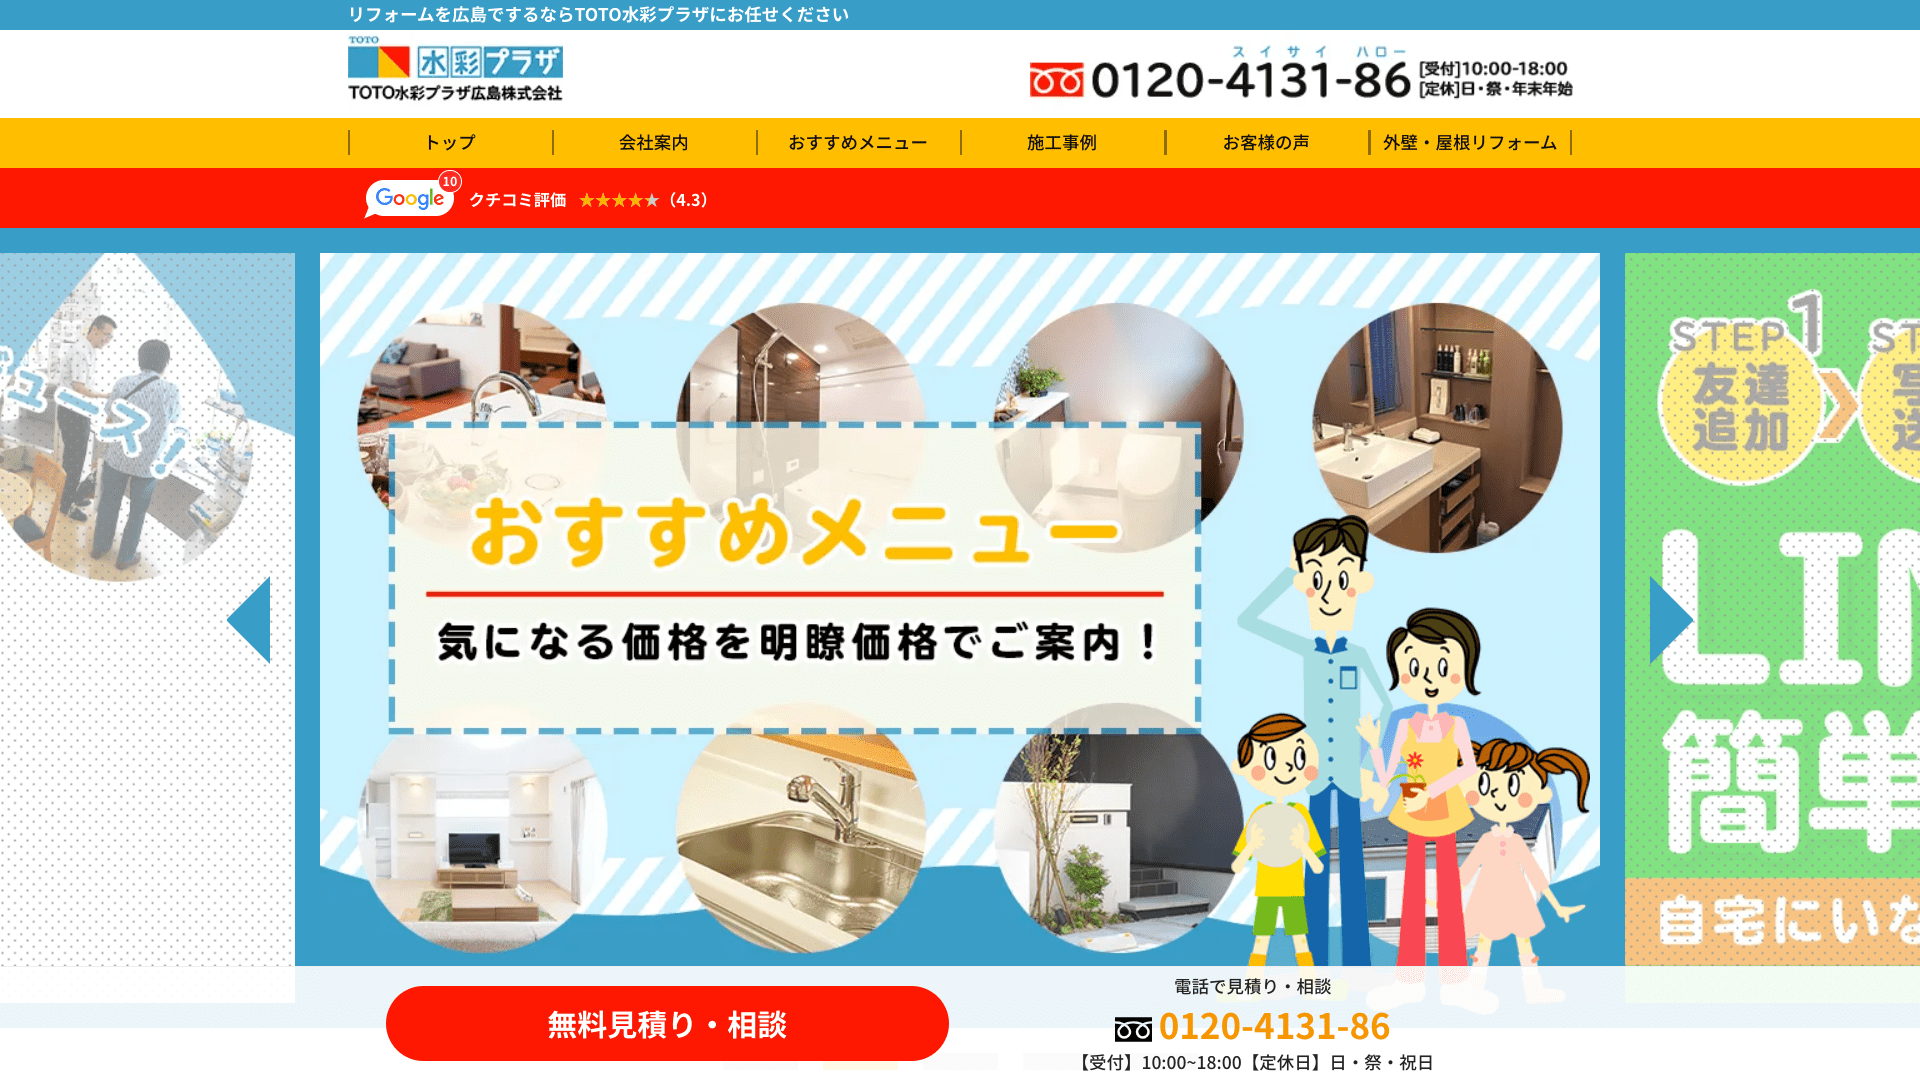 TOTO水彩プラザ広島株式会社